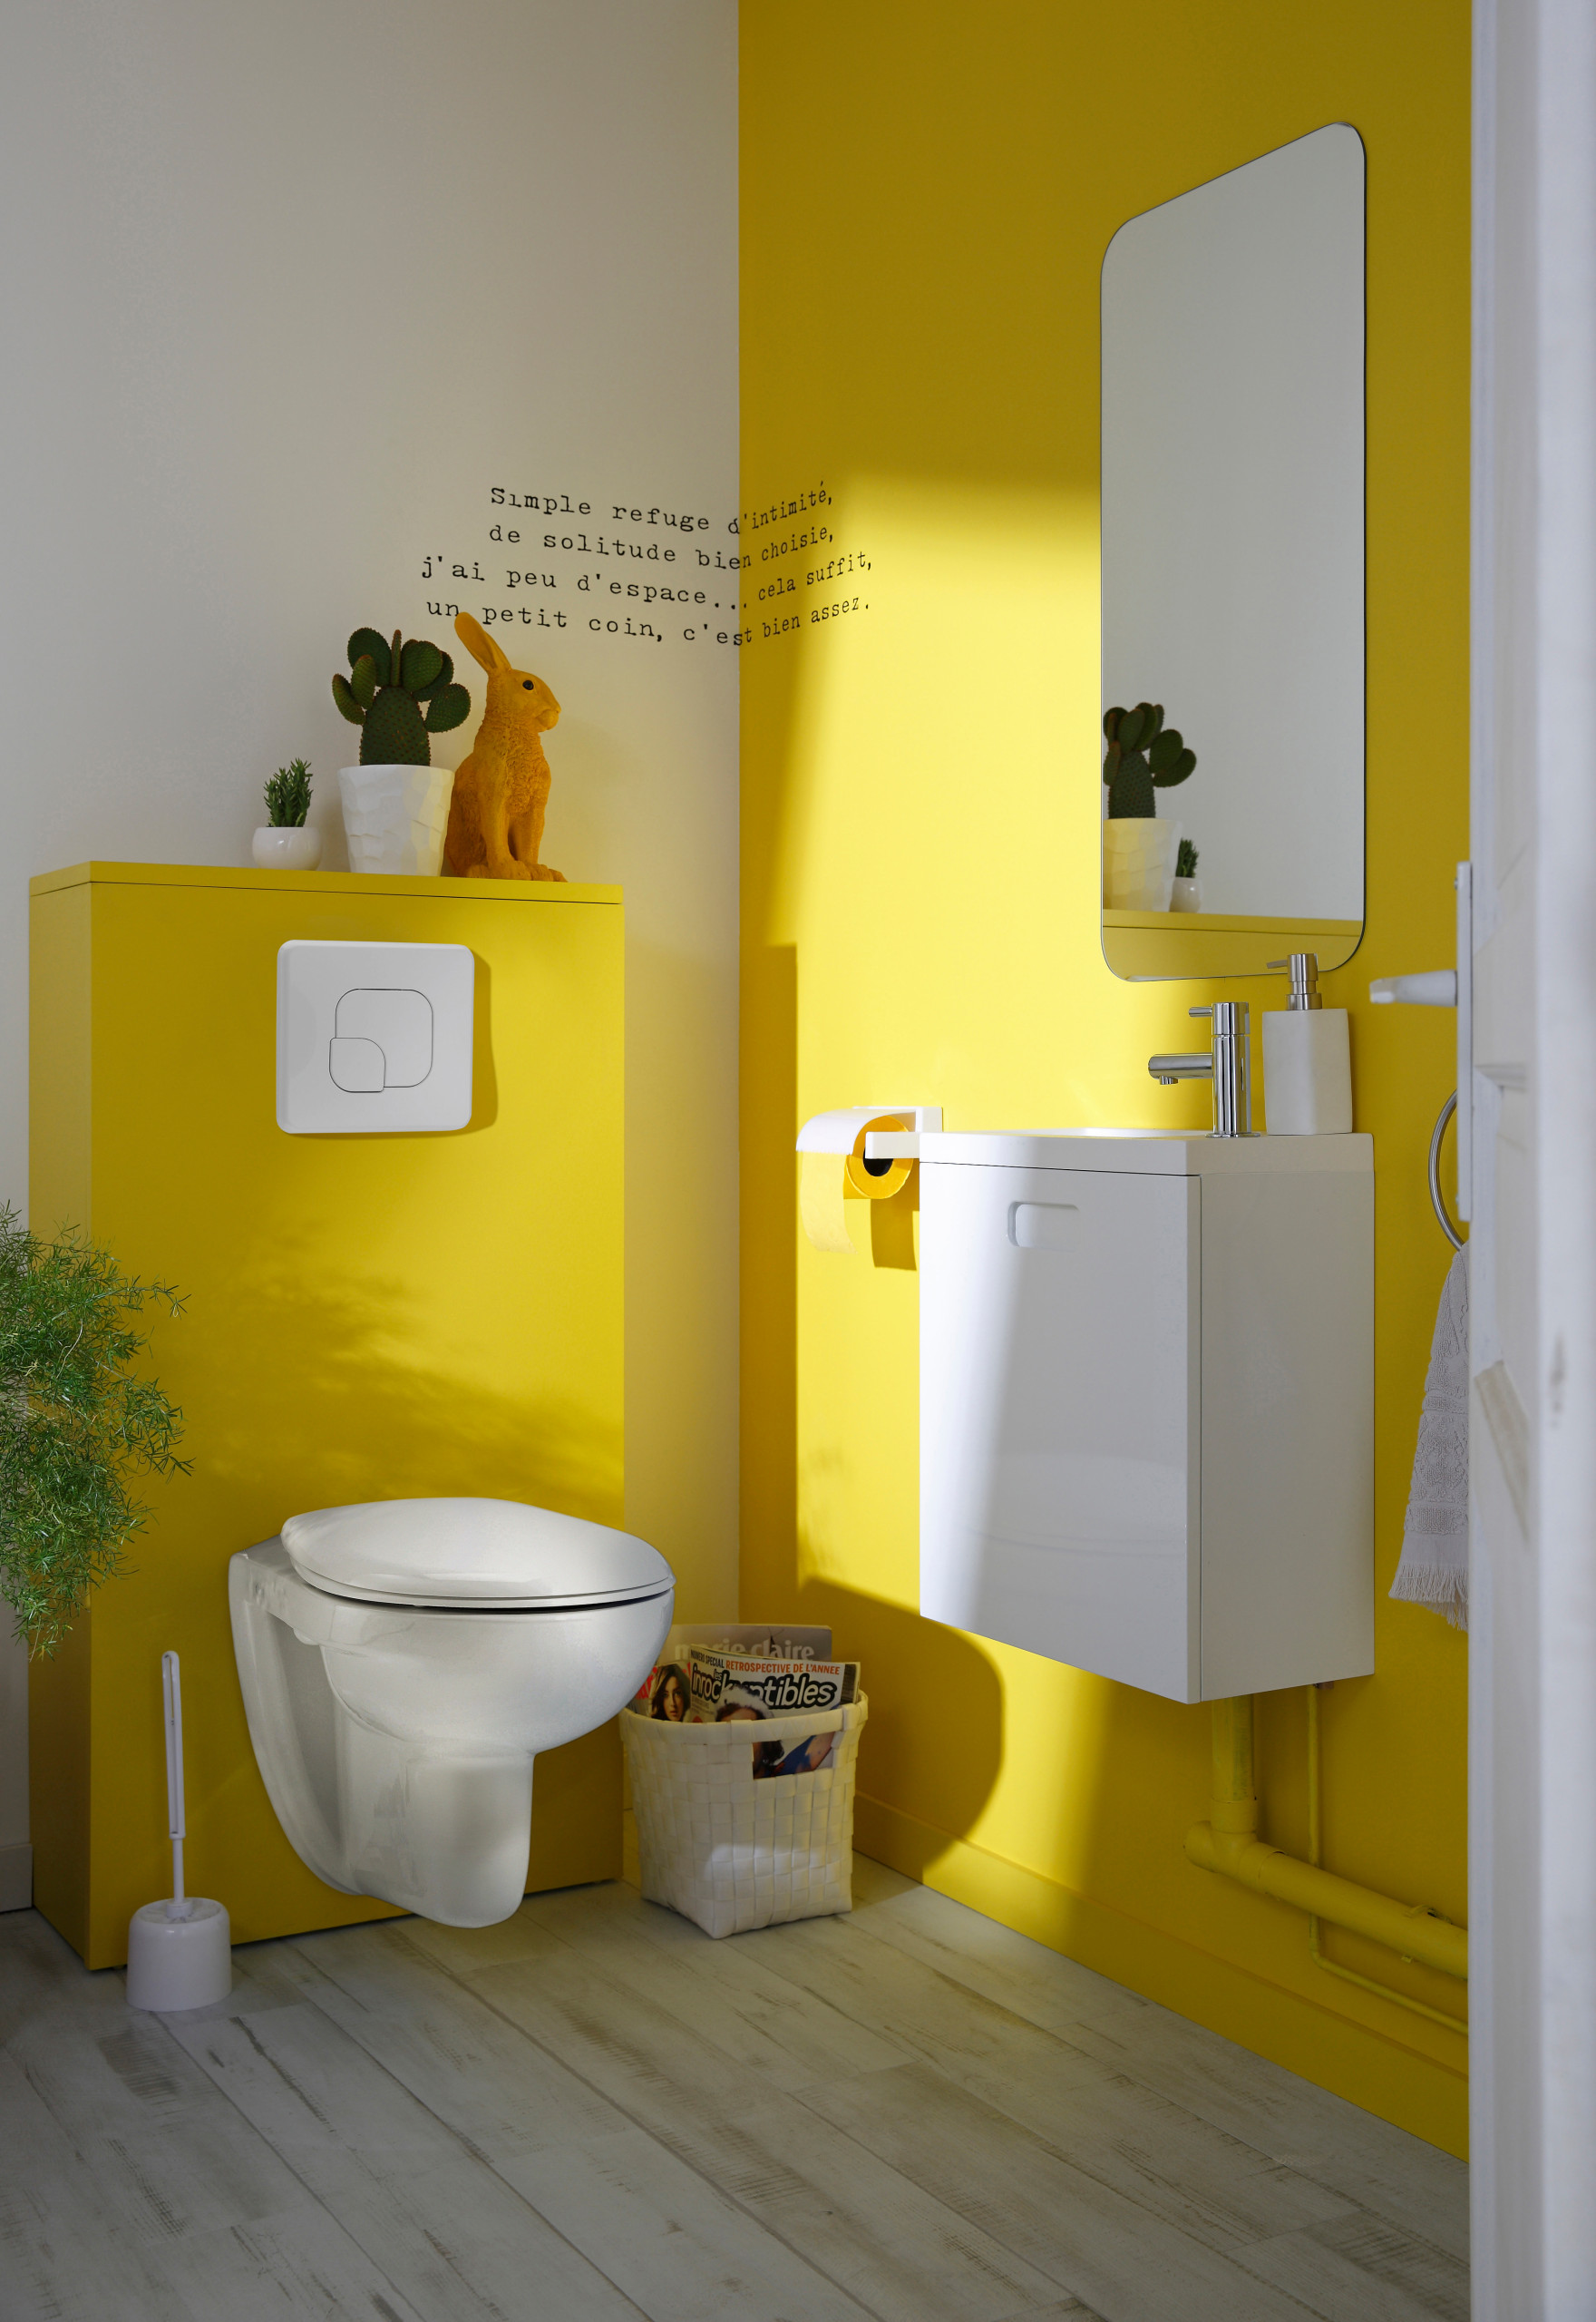 Унитаз компакт леруа мерлен. Желтый унитаз. Желтый унитаз в интерьере. Желтый в интерьере туалета. Интерьер туалетной комнаты в желтом и л.